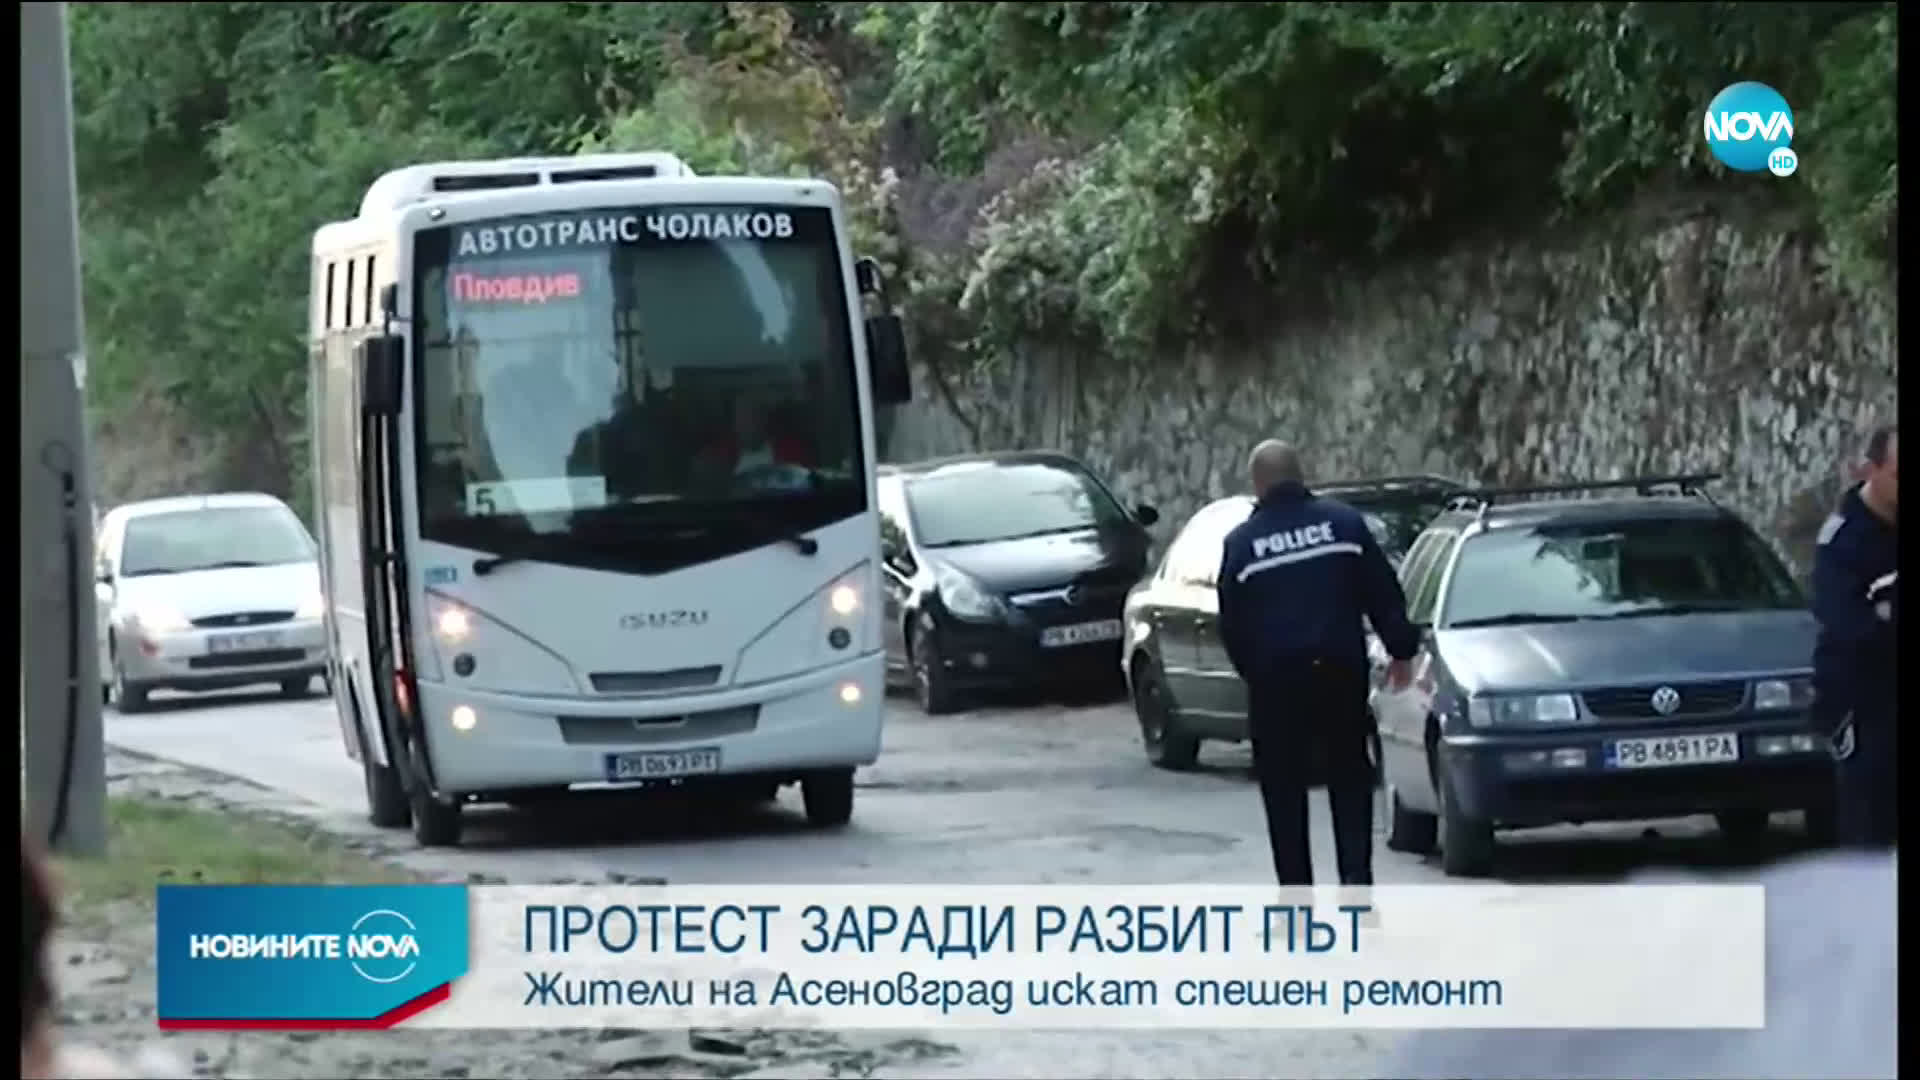 Протест заради път в окаяно състояние в Асеновград